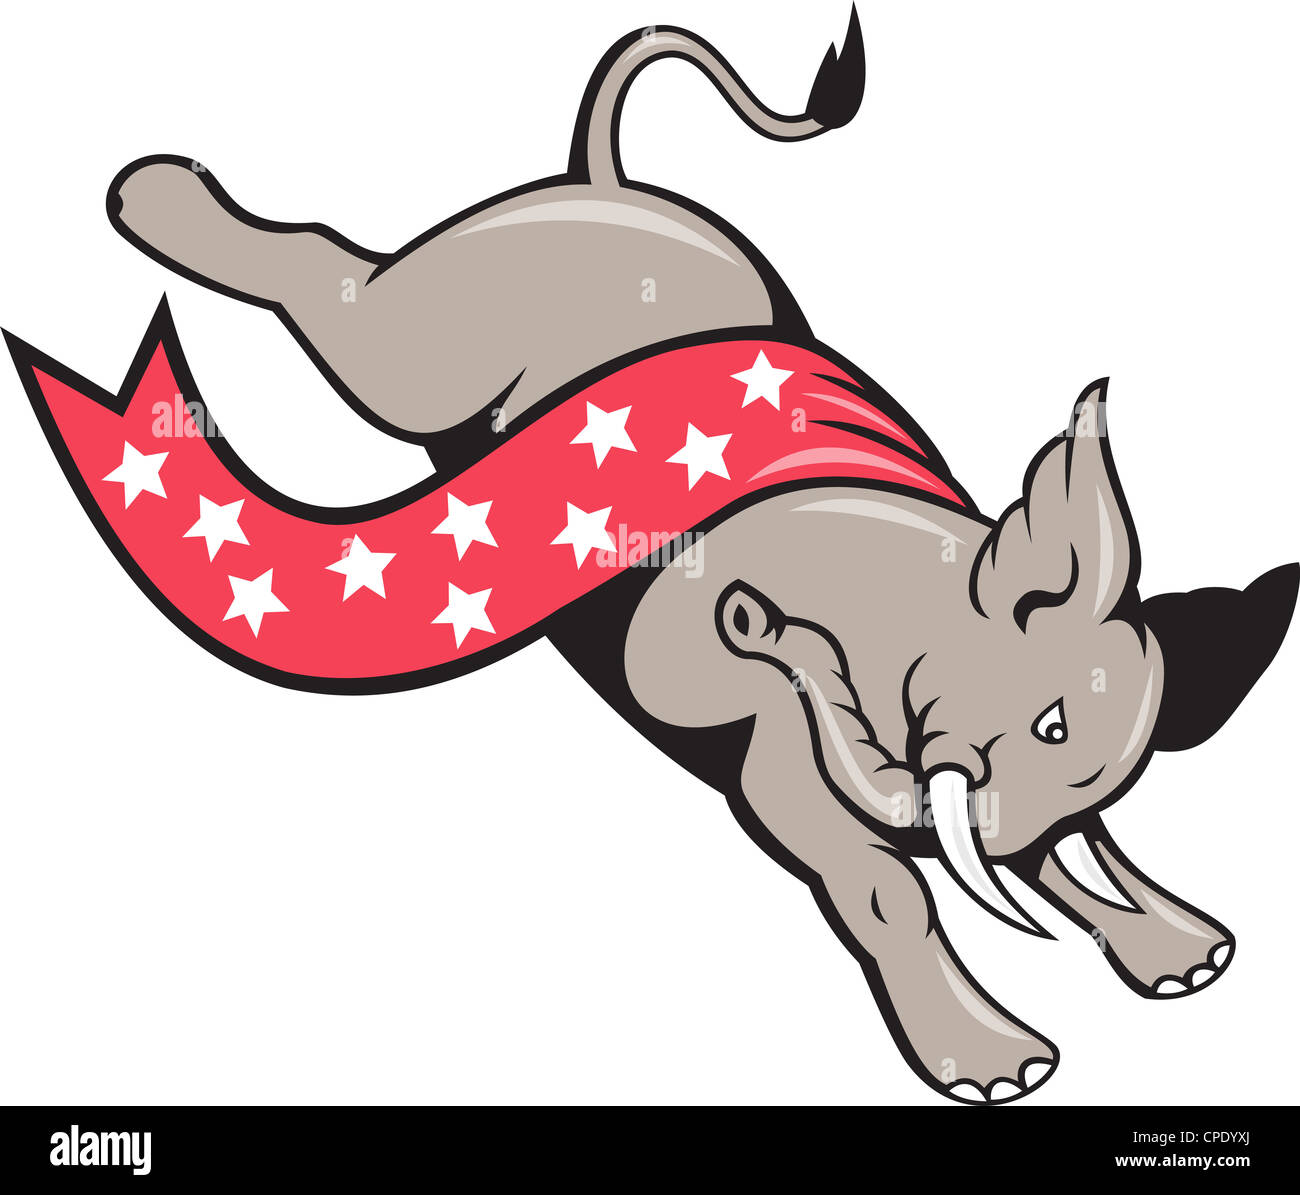 Cartoon illustration d'un saut éléphant sautant avec stars banner ruban comme mascotte républicaine isolées sur fond blanc. Banque D'Images